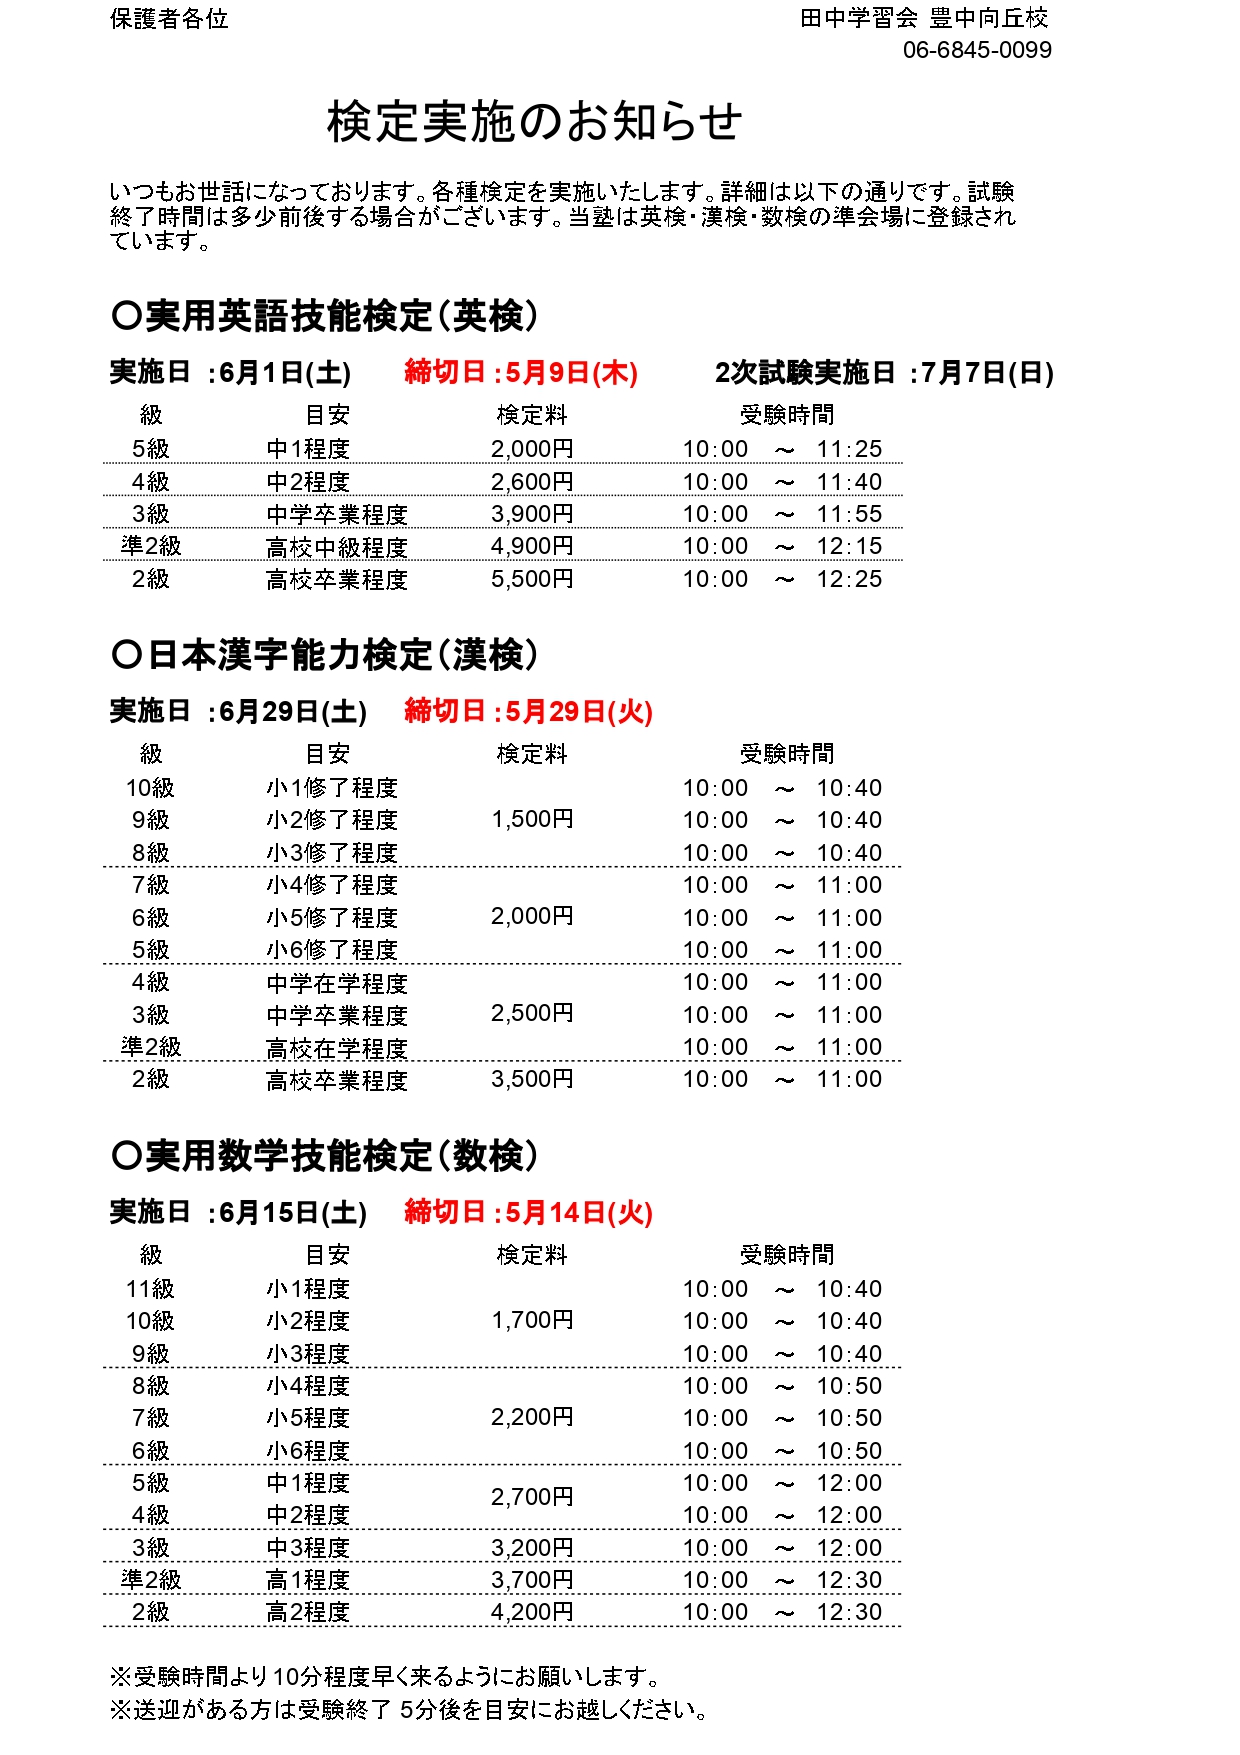 漢字 検定 日程